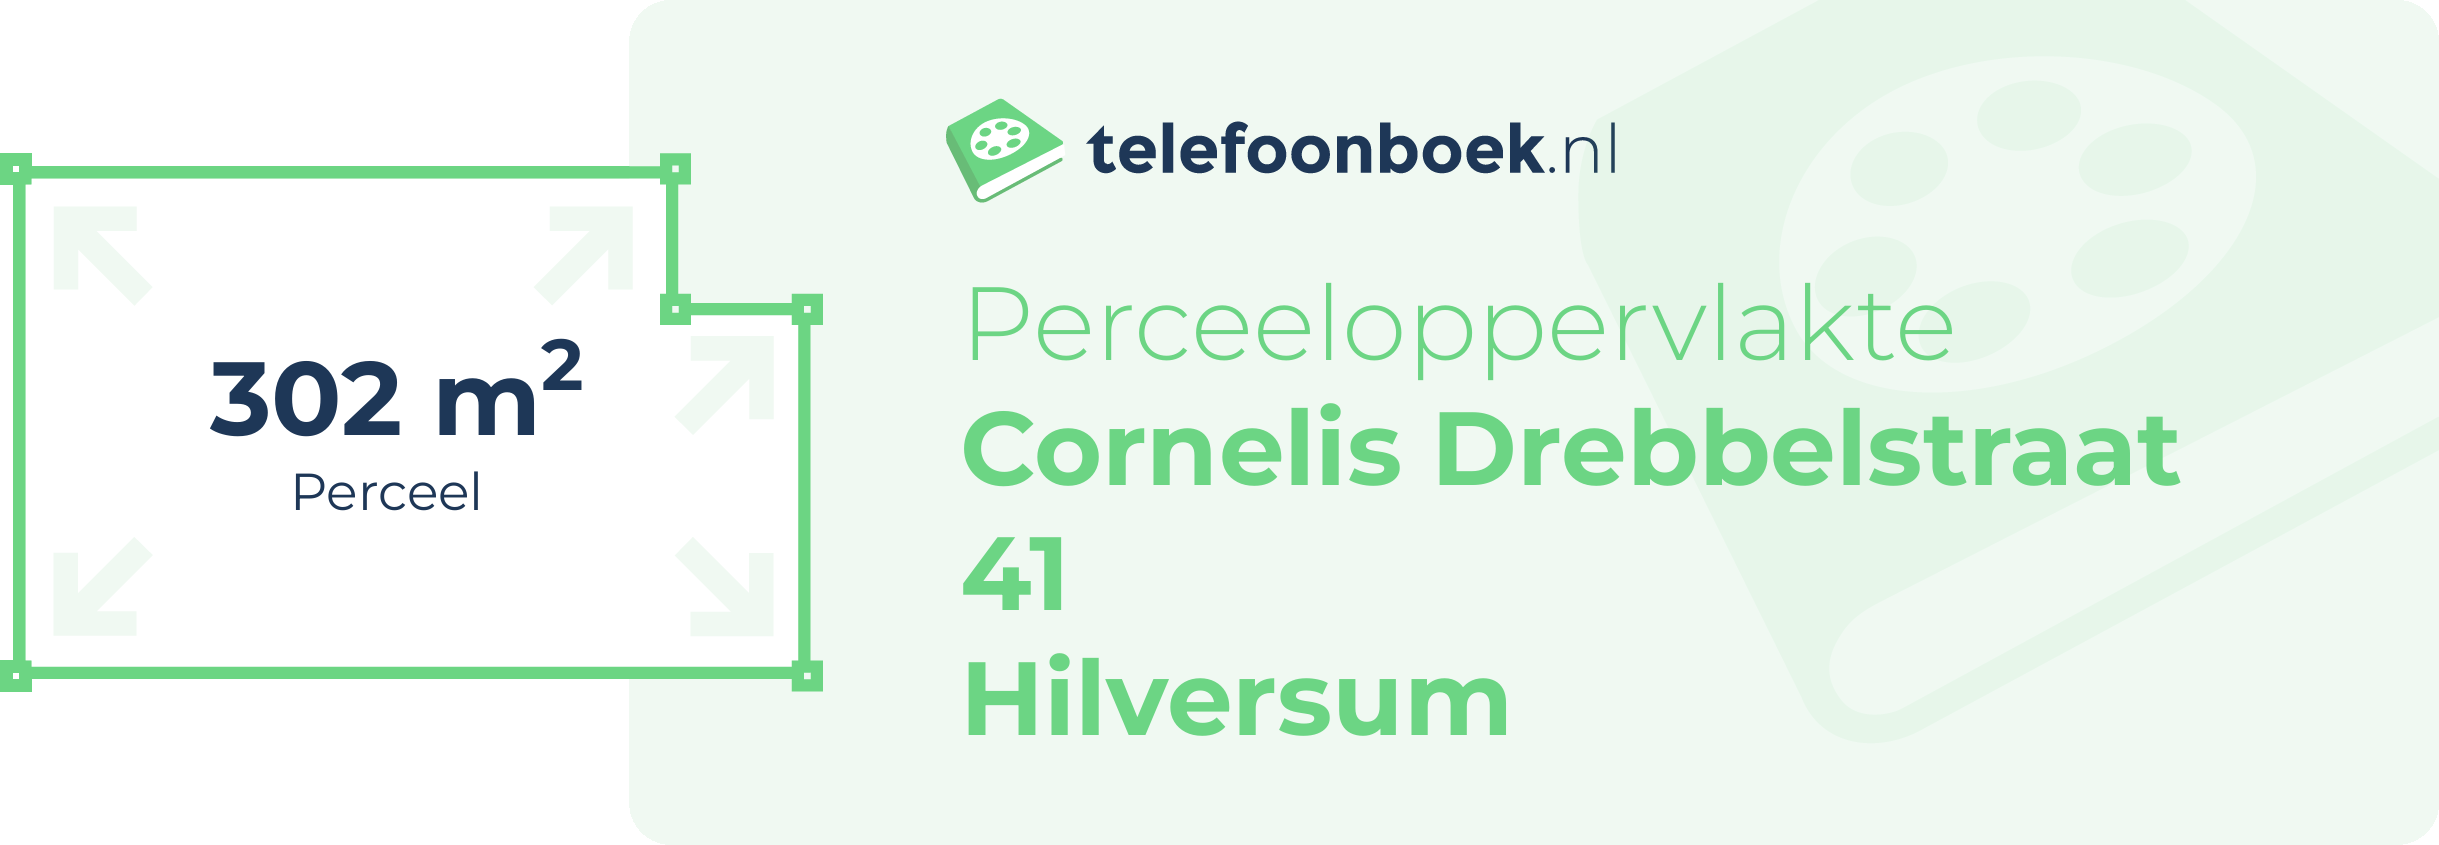 Perceeloppervlakte Cornelis Drebbelstraat 41 Hilversum